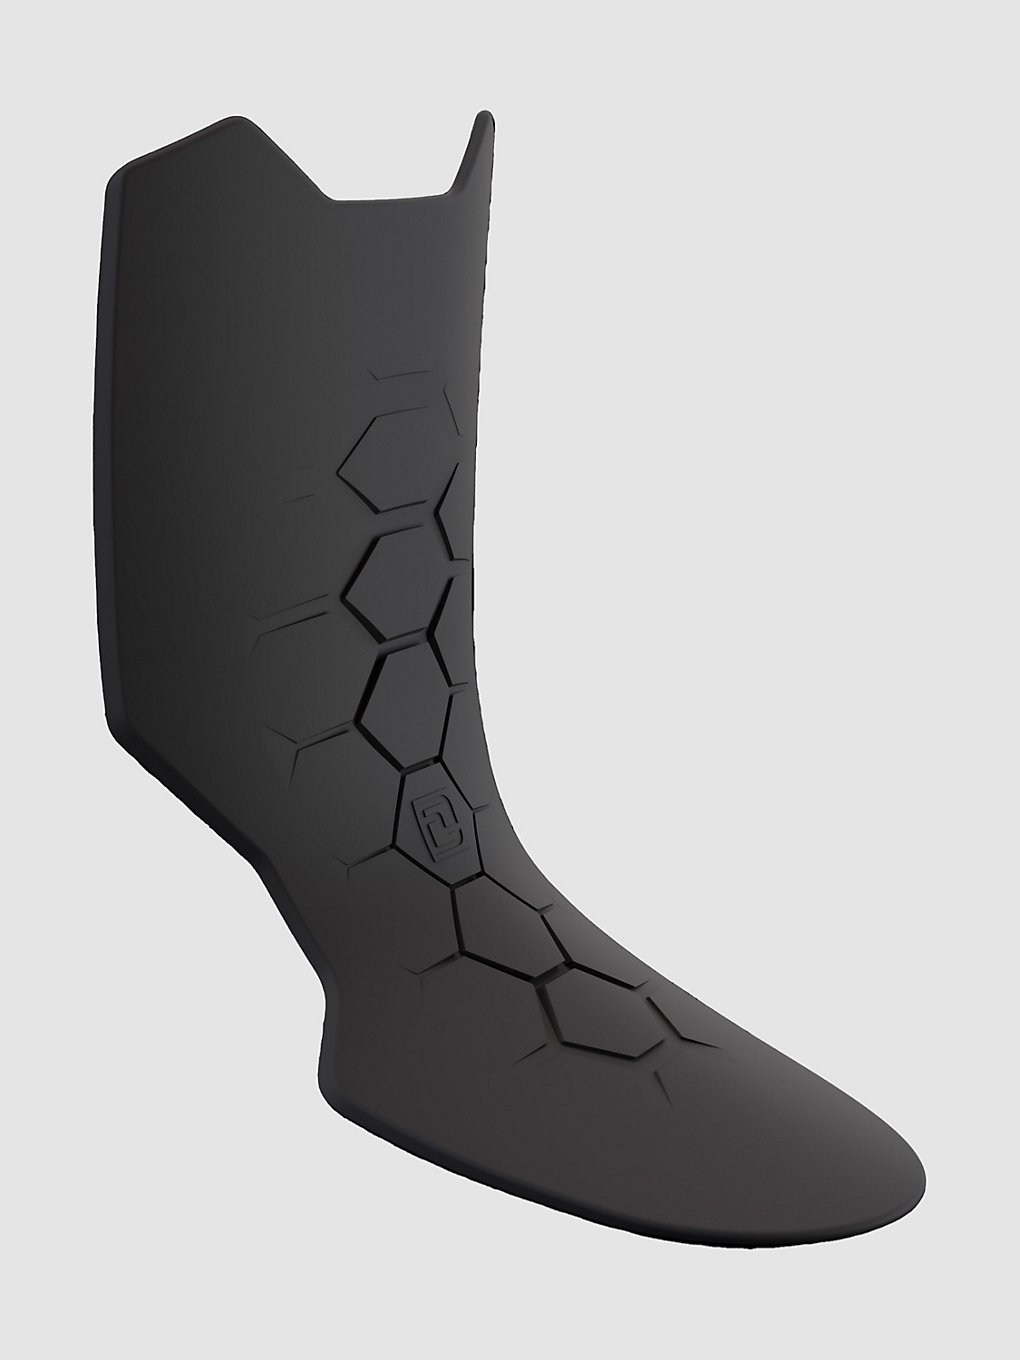 DEELUXE Flex Booster 3K Schnürsenkel black kaufen